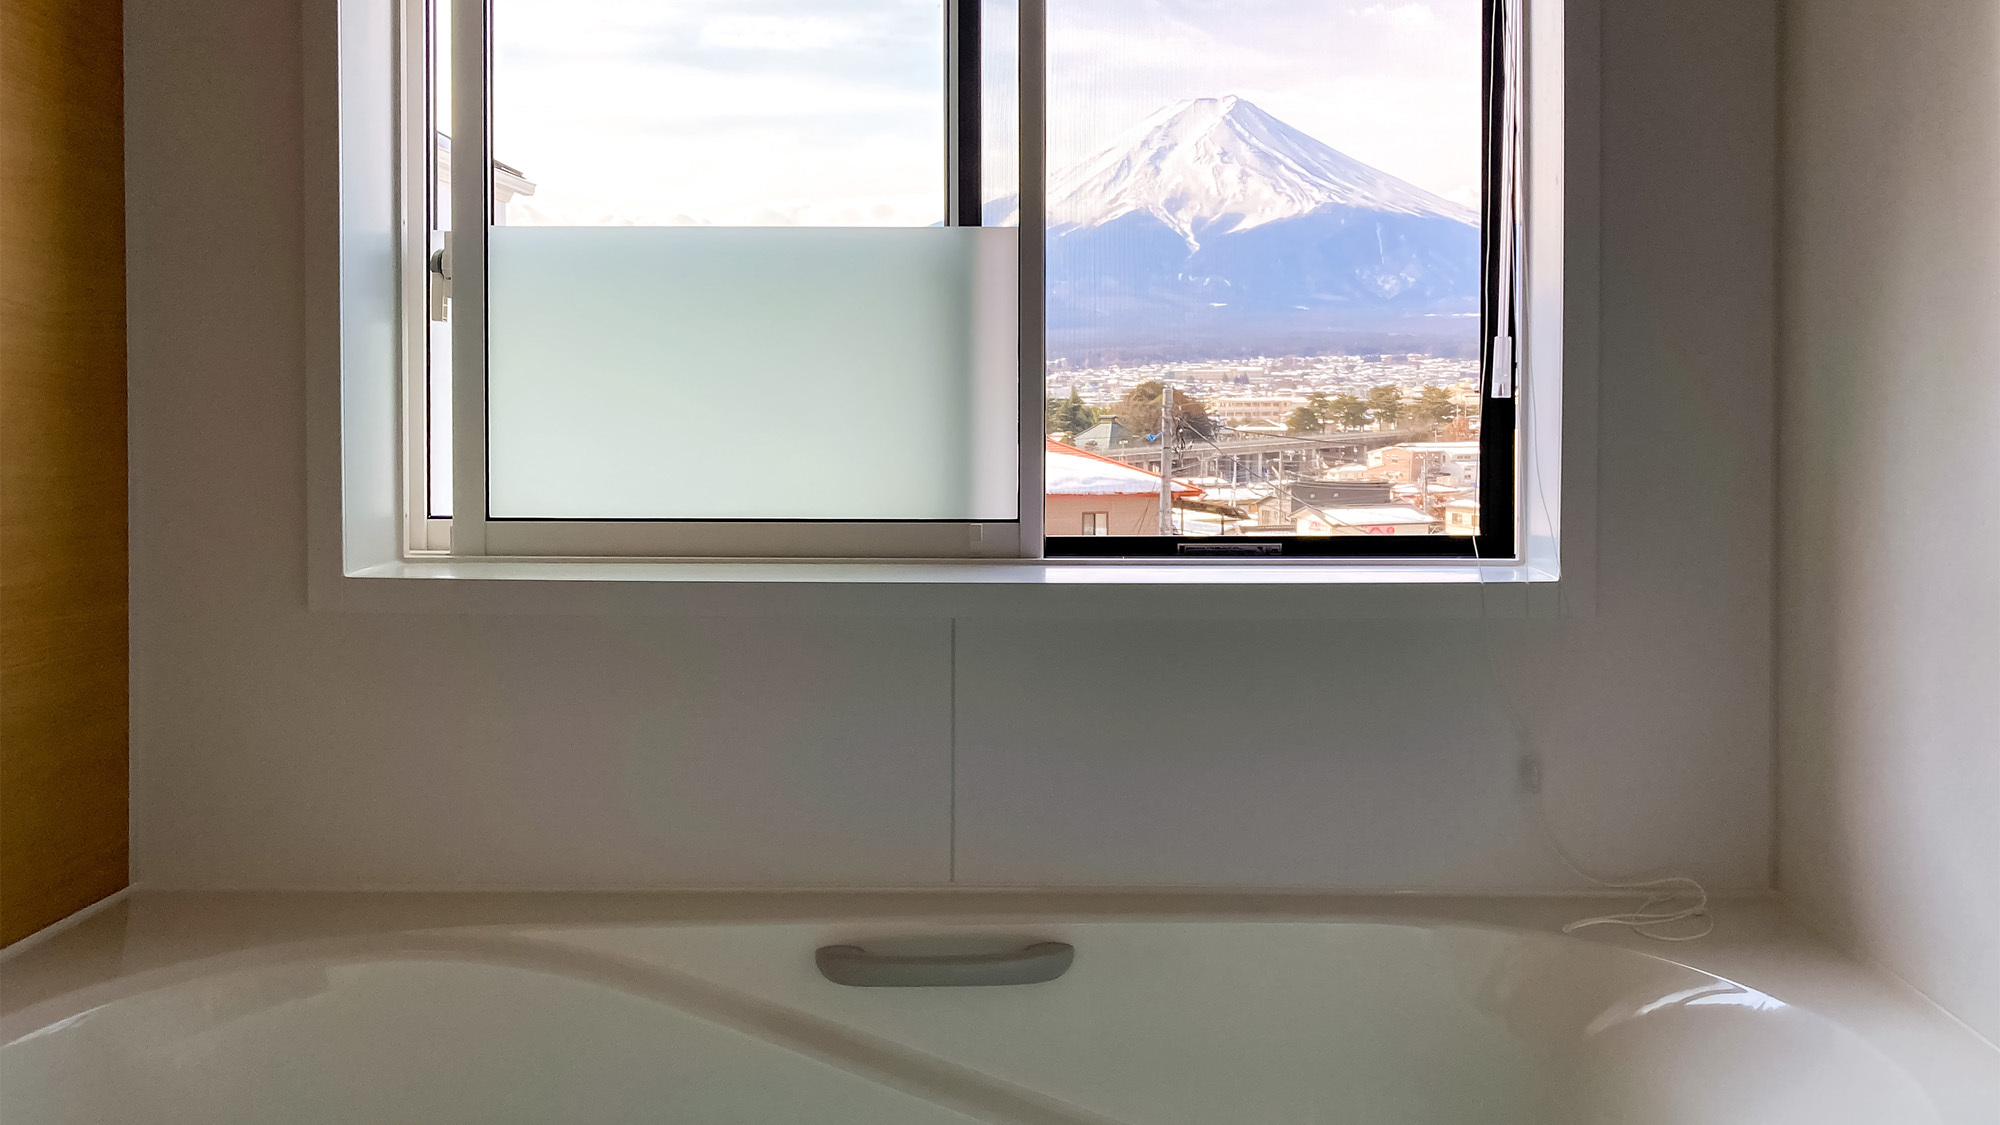 ・ゆったりとお湯につかりながら富士山を眺める贅沢な時間